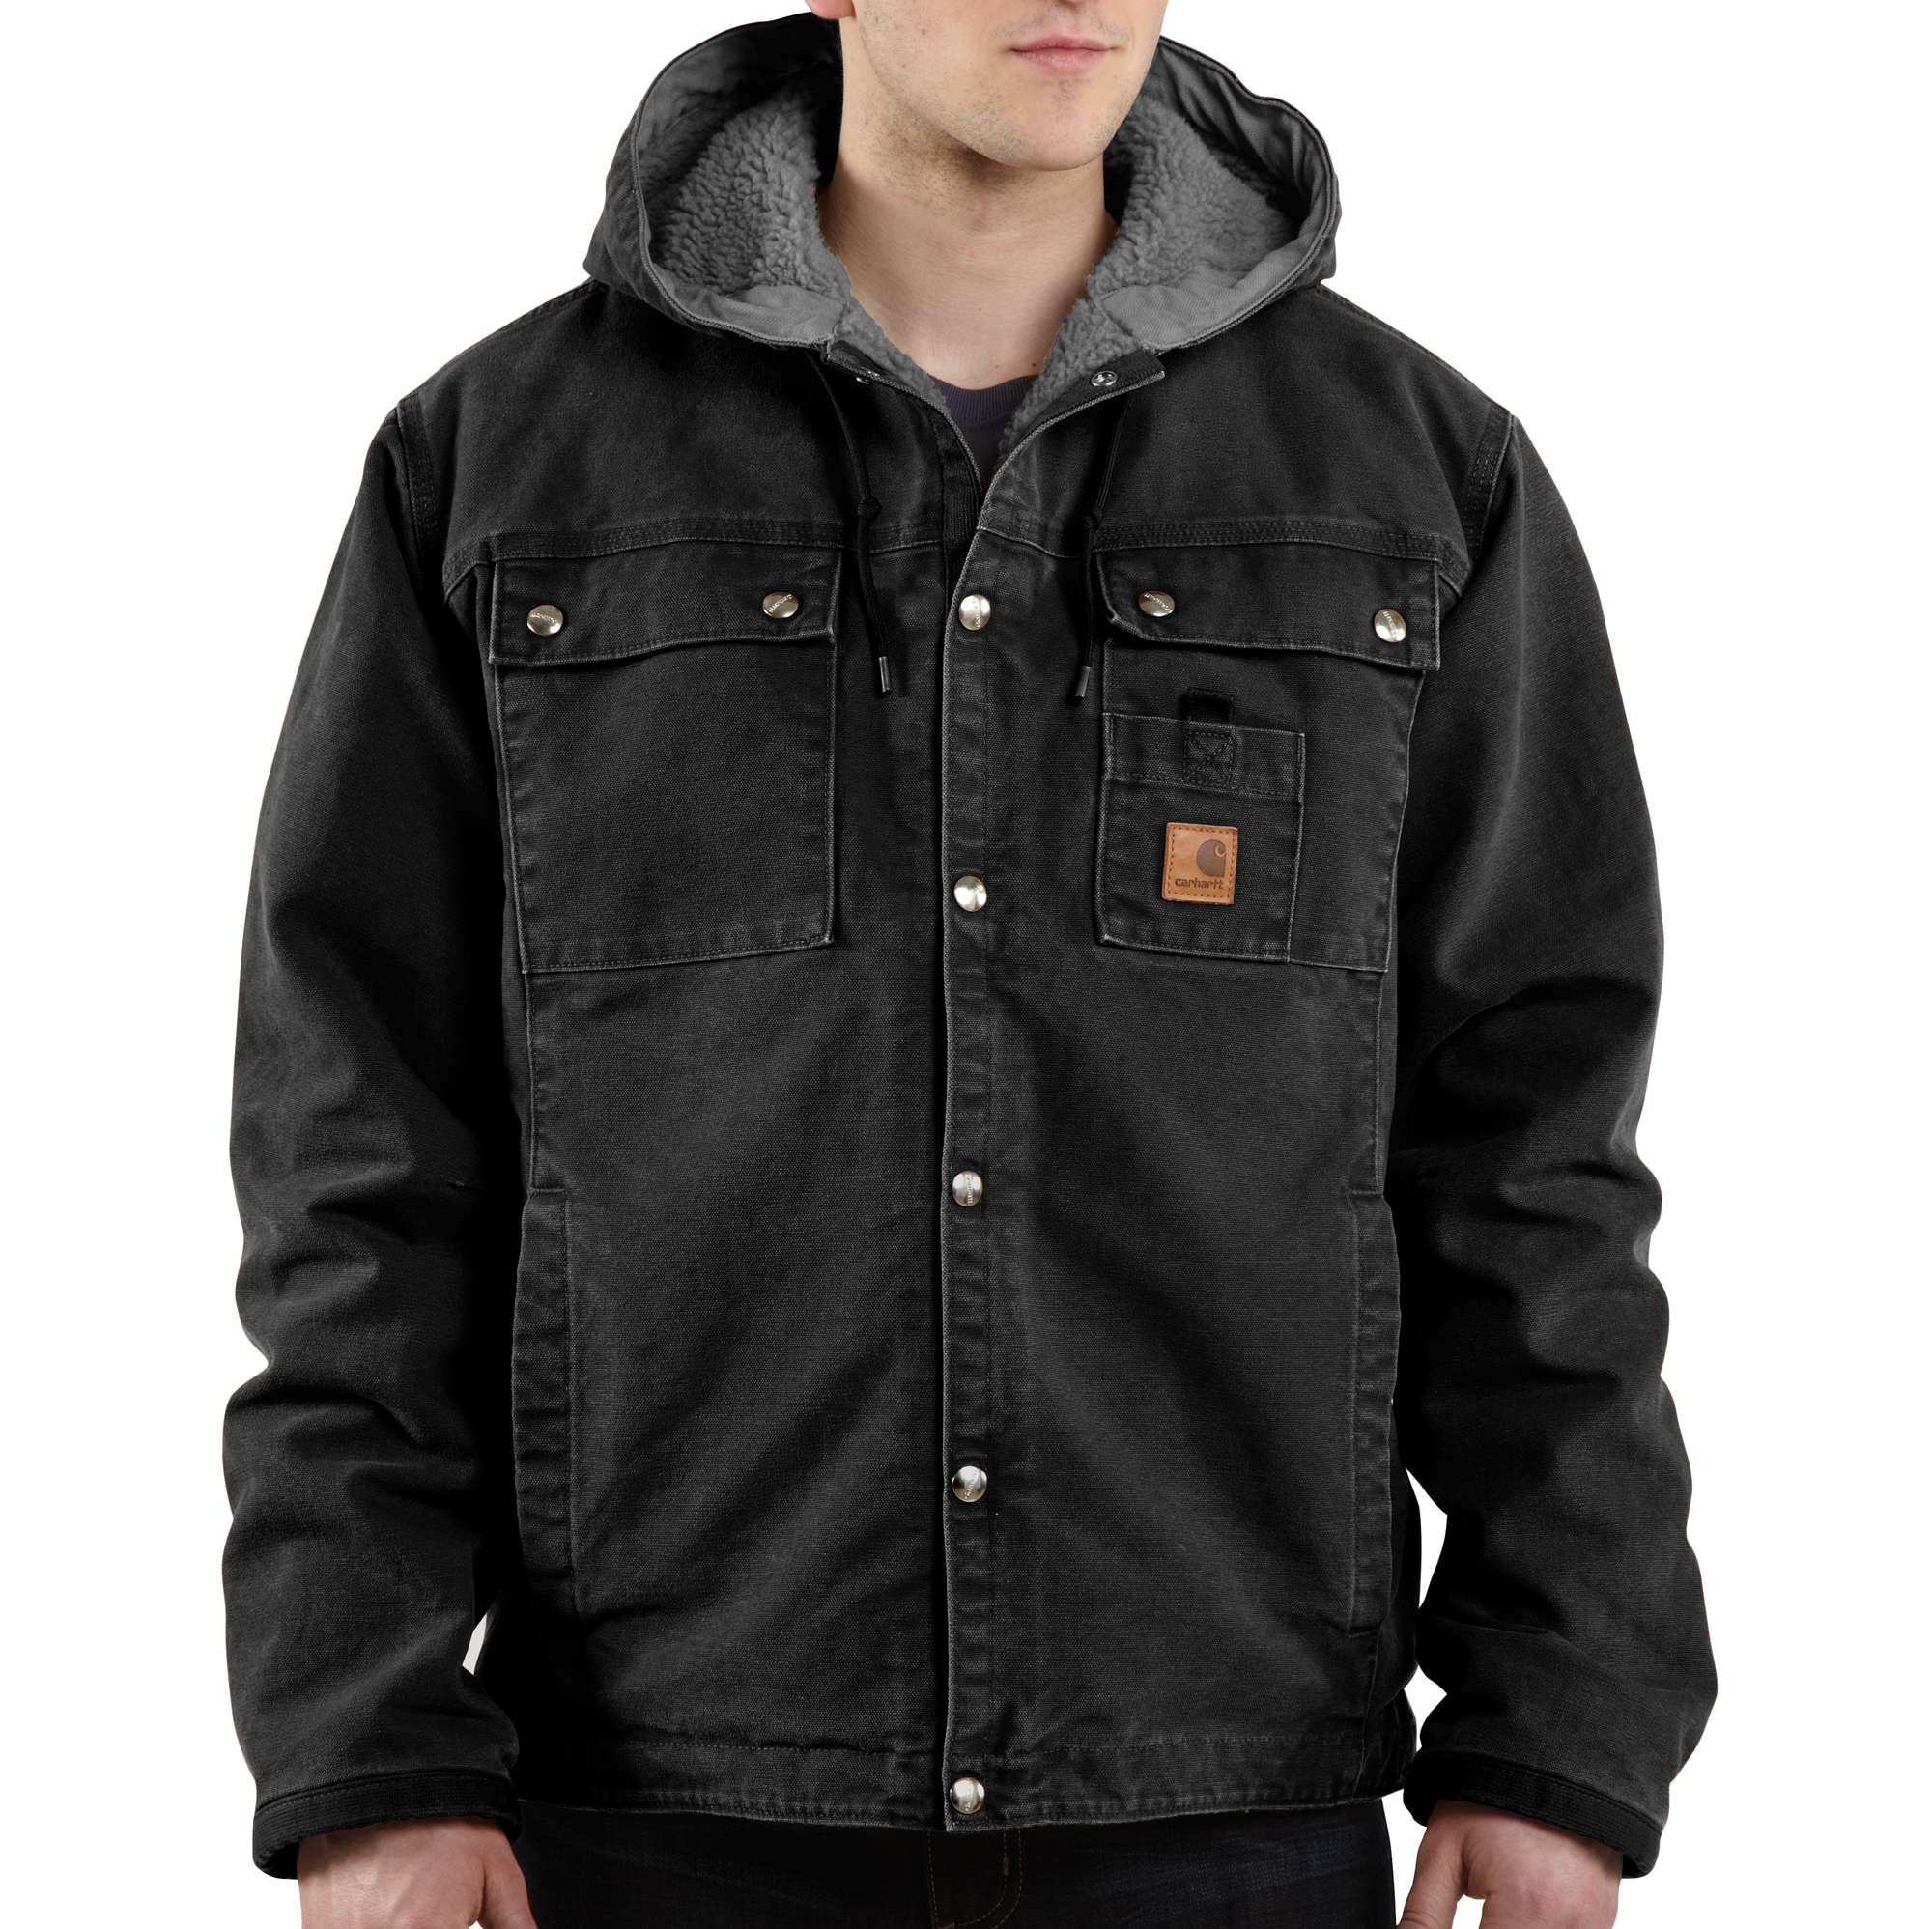 Sandstone Hooded Multi-Pocket Jacket/Sherpa Lined